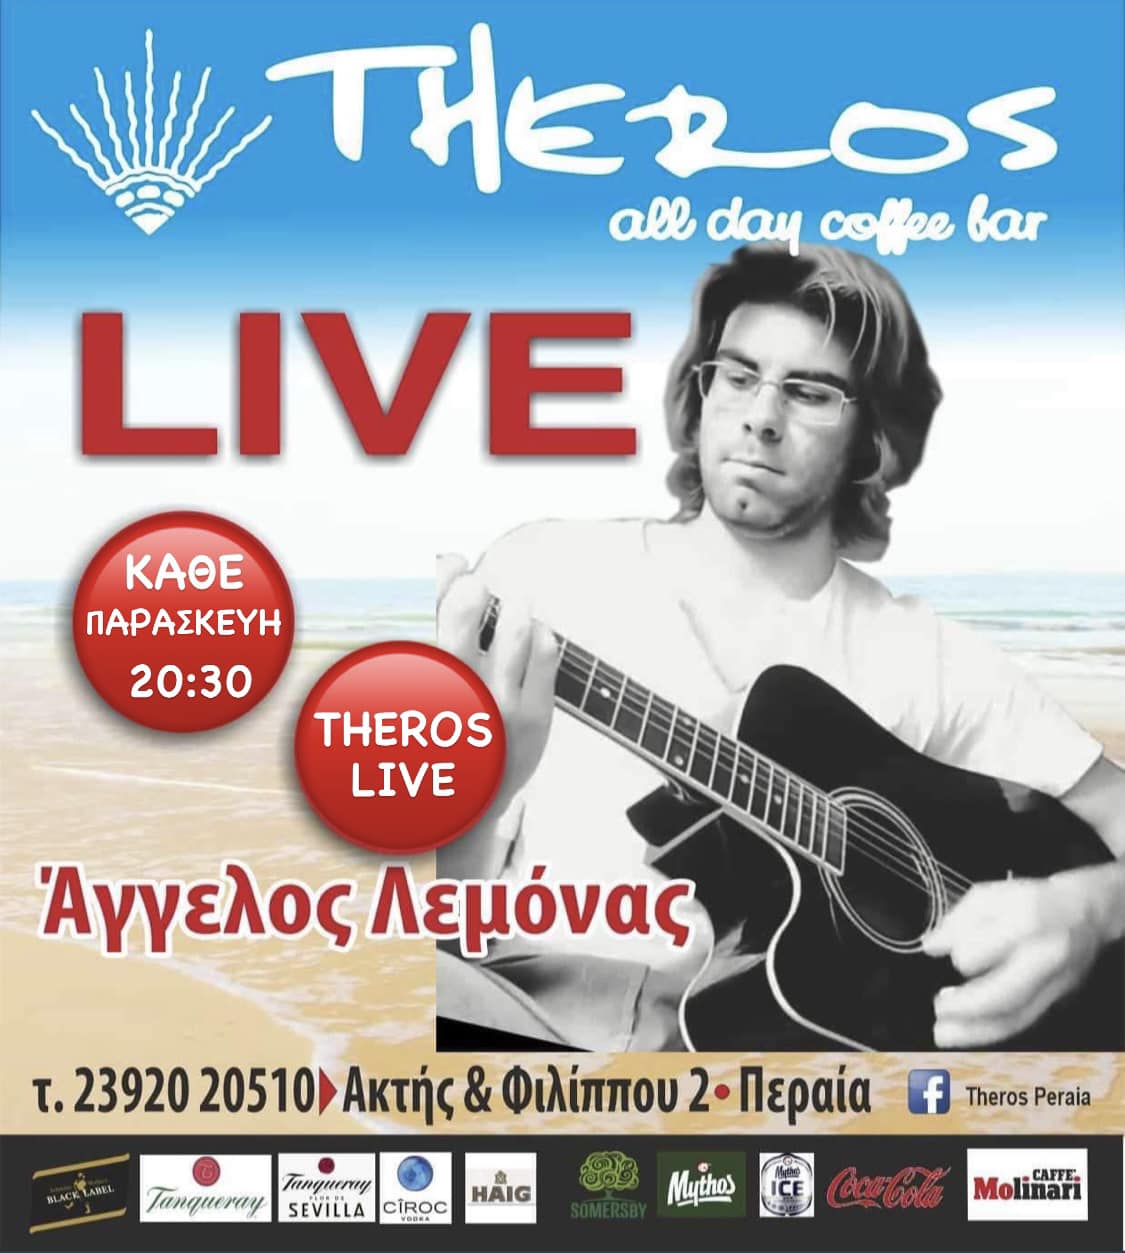 Δεν ξεχνάμε το αποψινό live του Αγγελου Λεμόνα στο “Theros”!!